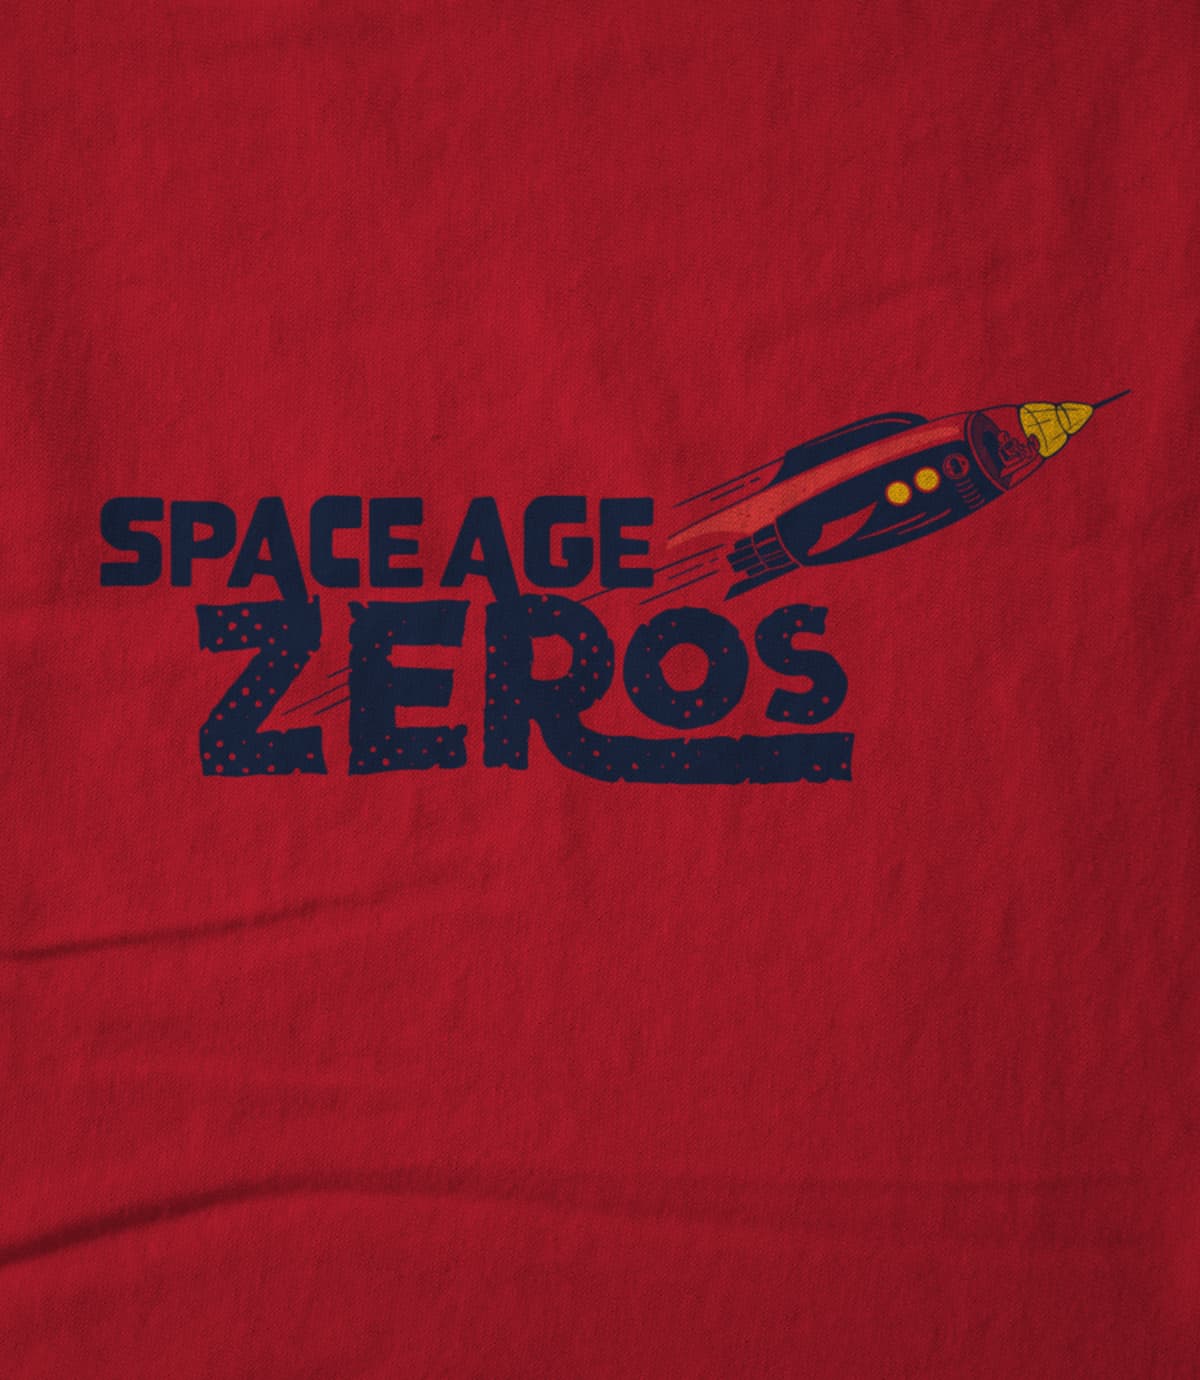 Spaceagezeros 1667324530